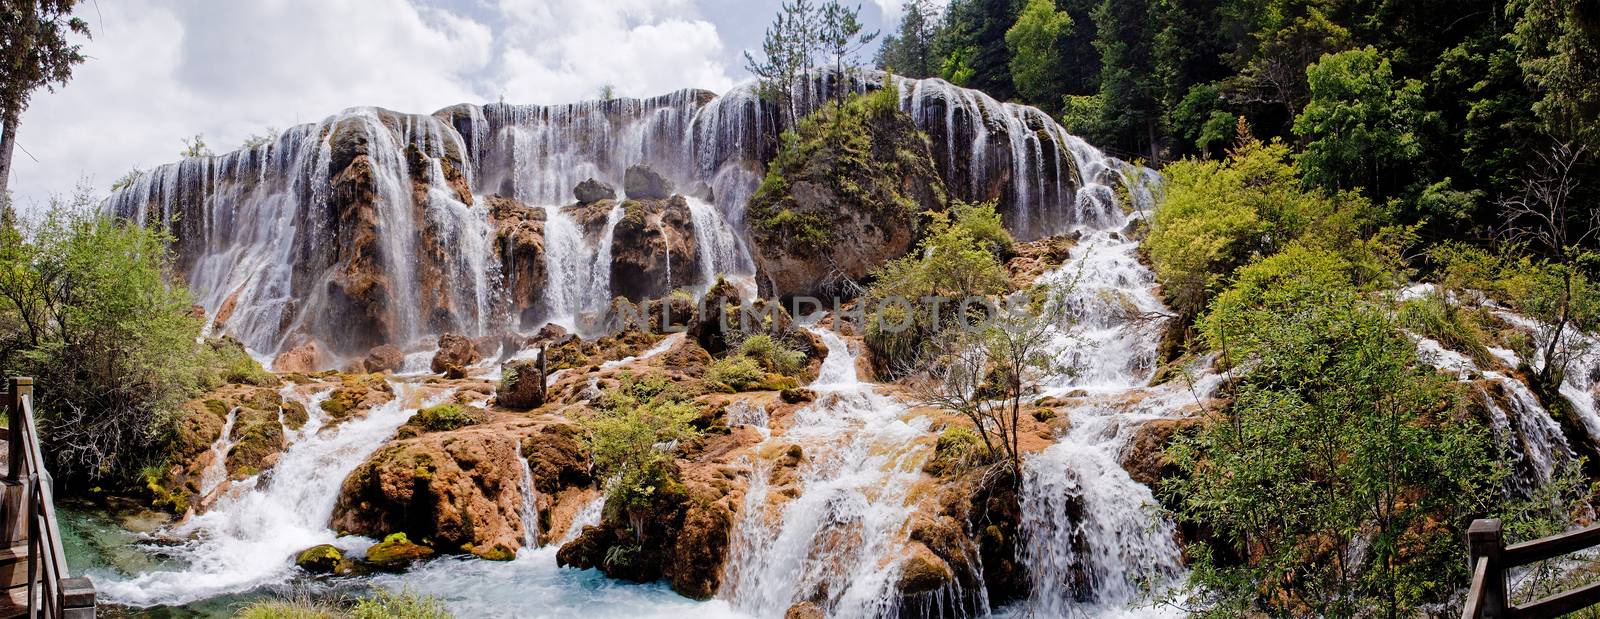 Aqua Azul waterfall near Palenque in Mexico